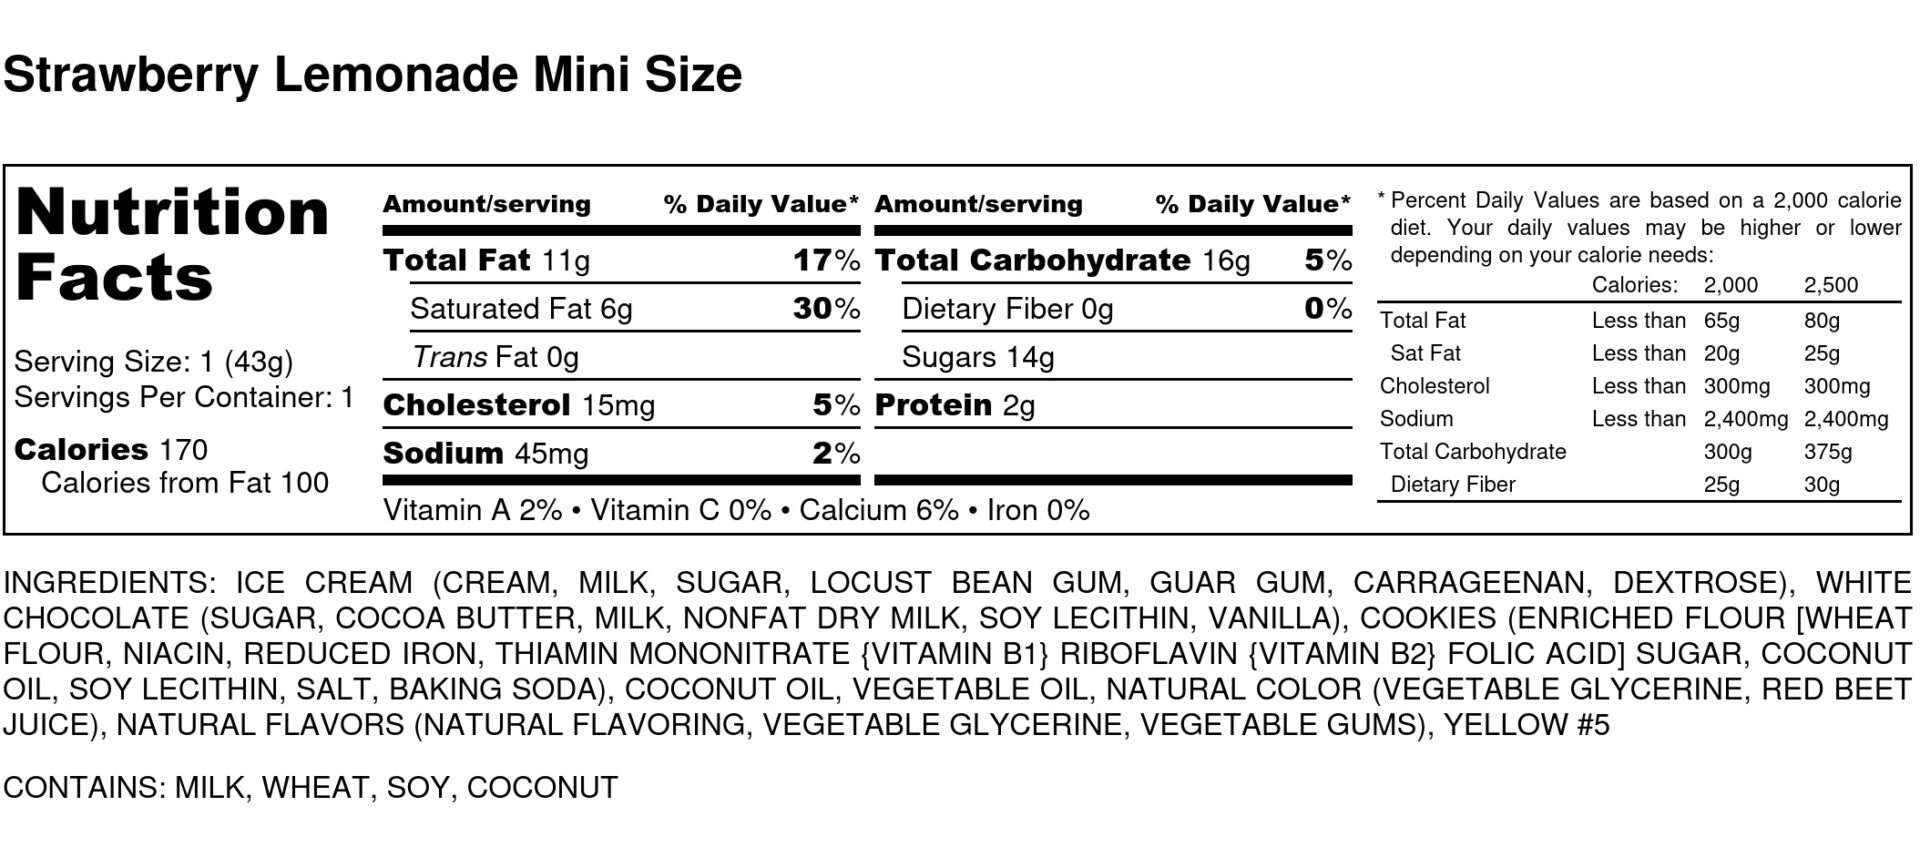 Strawberry Lemonade Mini Size Nutrition Label scaled